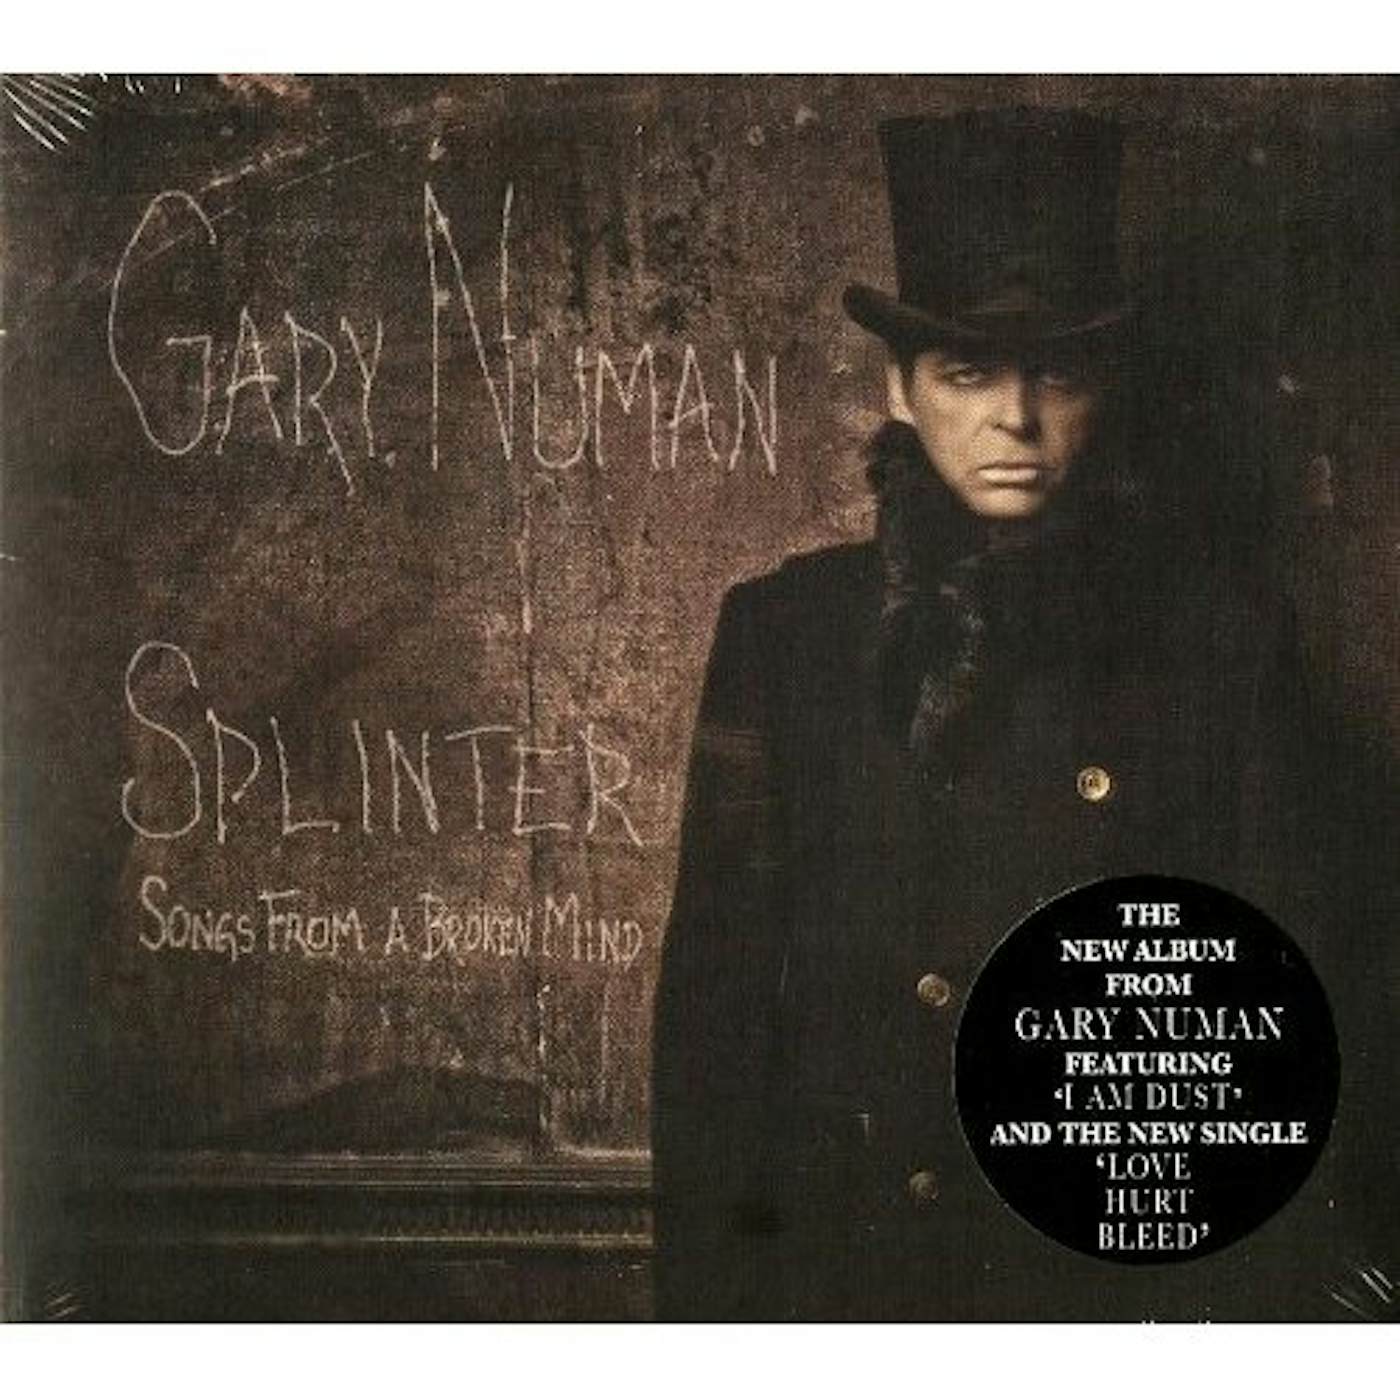 Gary Numan SPLINTER (SONGS FROM A BROKEN MIND) CD